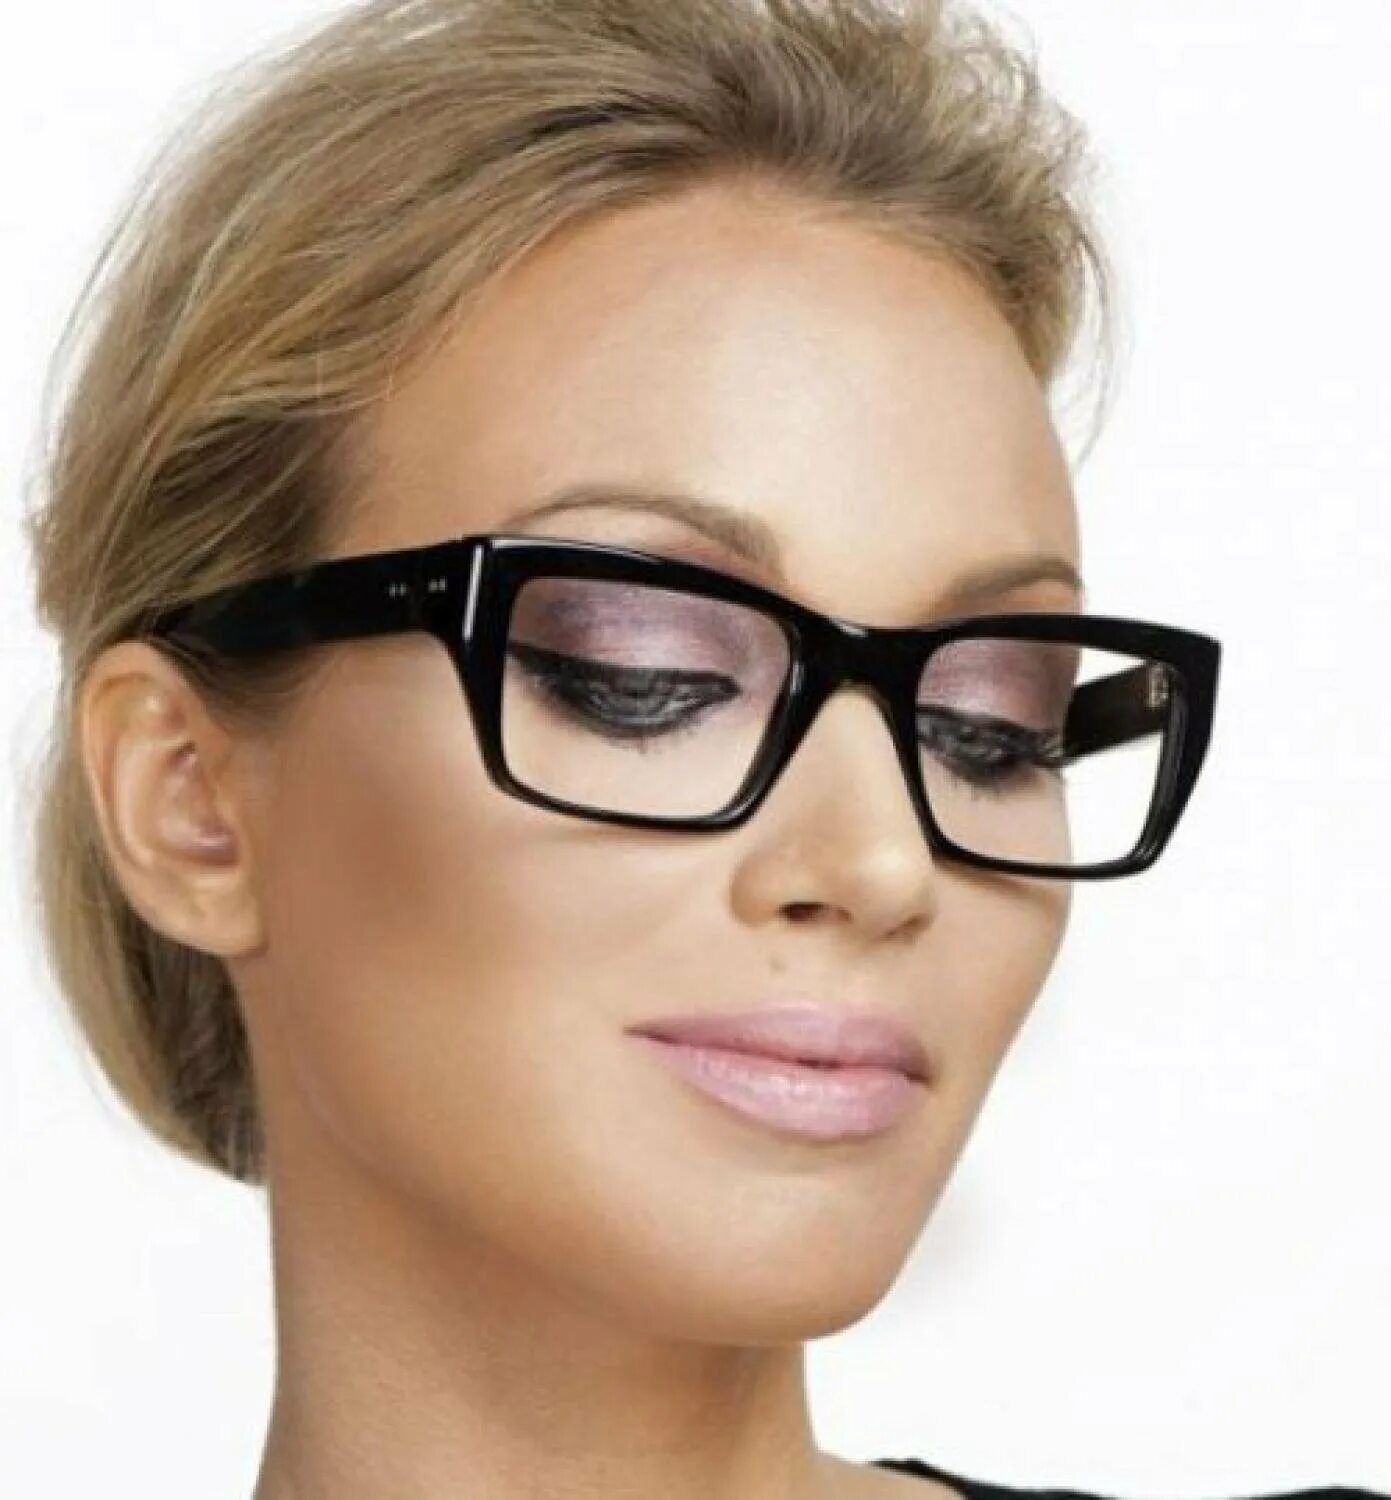 Узкое лицо какие очки. Стильные очки для зрения. Стильные женские очки для зрения. Оправа для очков. Стильные оправы для очков женские.